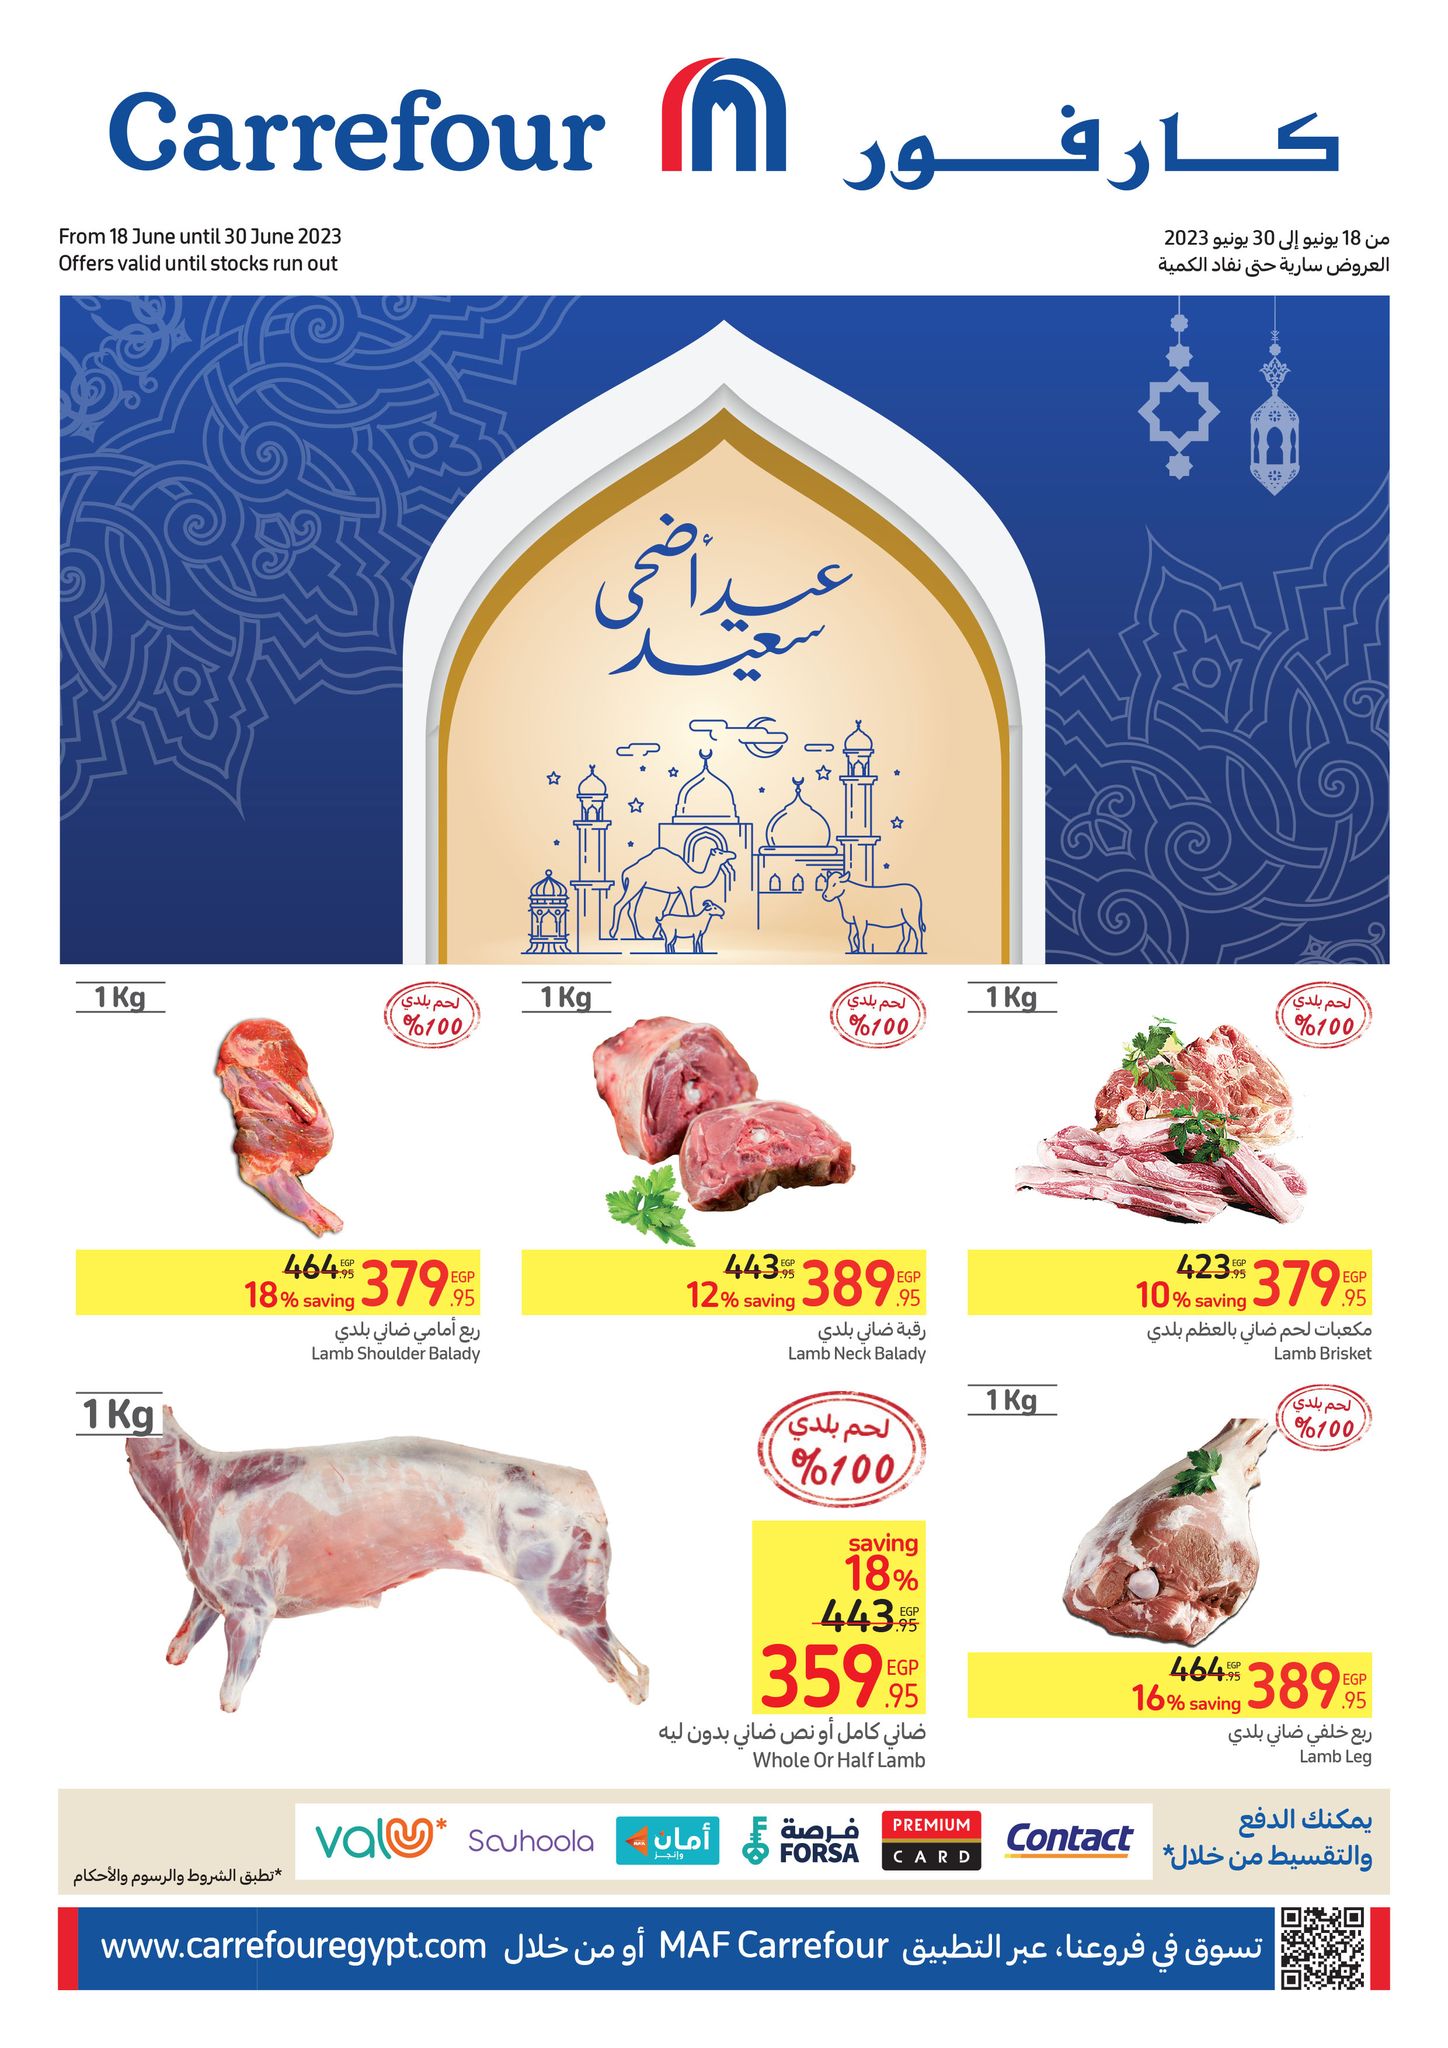 كارفور يطرح عروضاً استثنائية بتخفيضات مذهلة تصل إلى 60% على كل الأصناف خاصة اللحوم بمناسبة عيد الأضحى المبارك 7